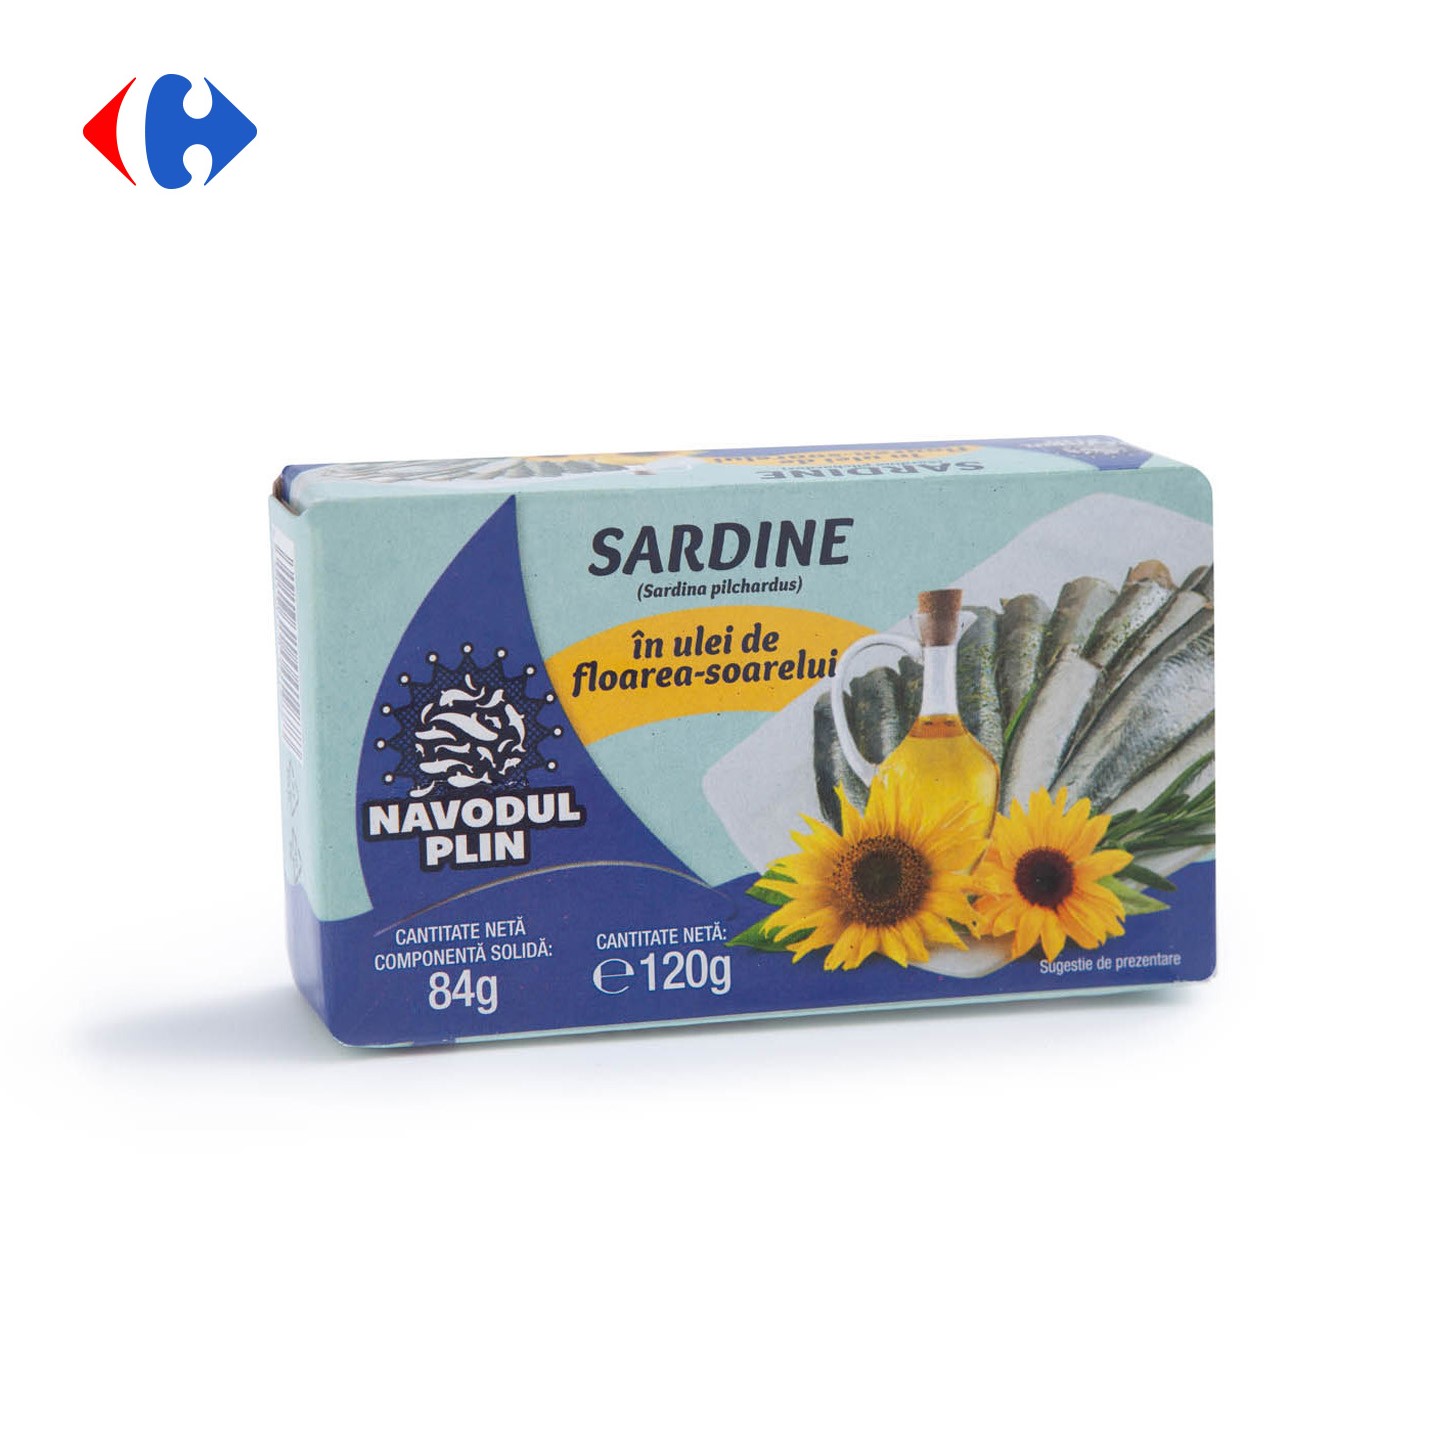 Sardine în ulei de floarea soarelui, Năvodul Plin 120g